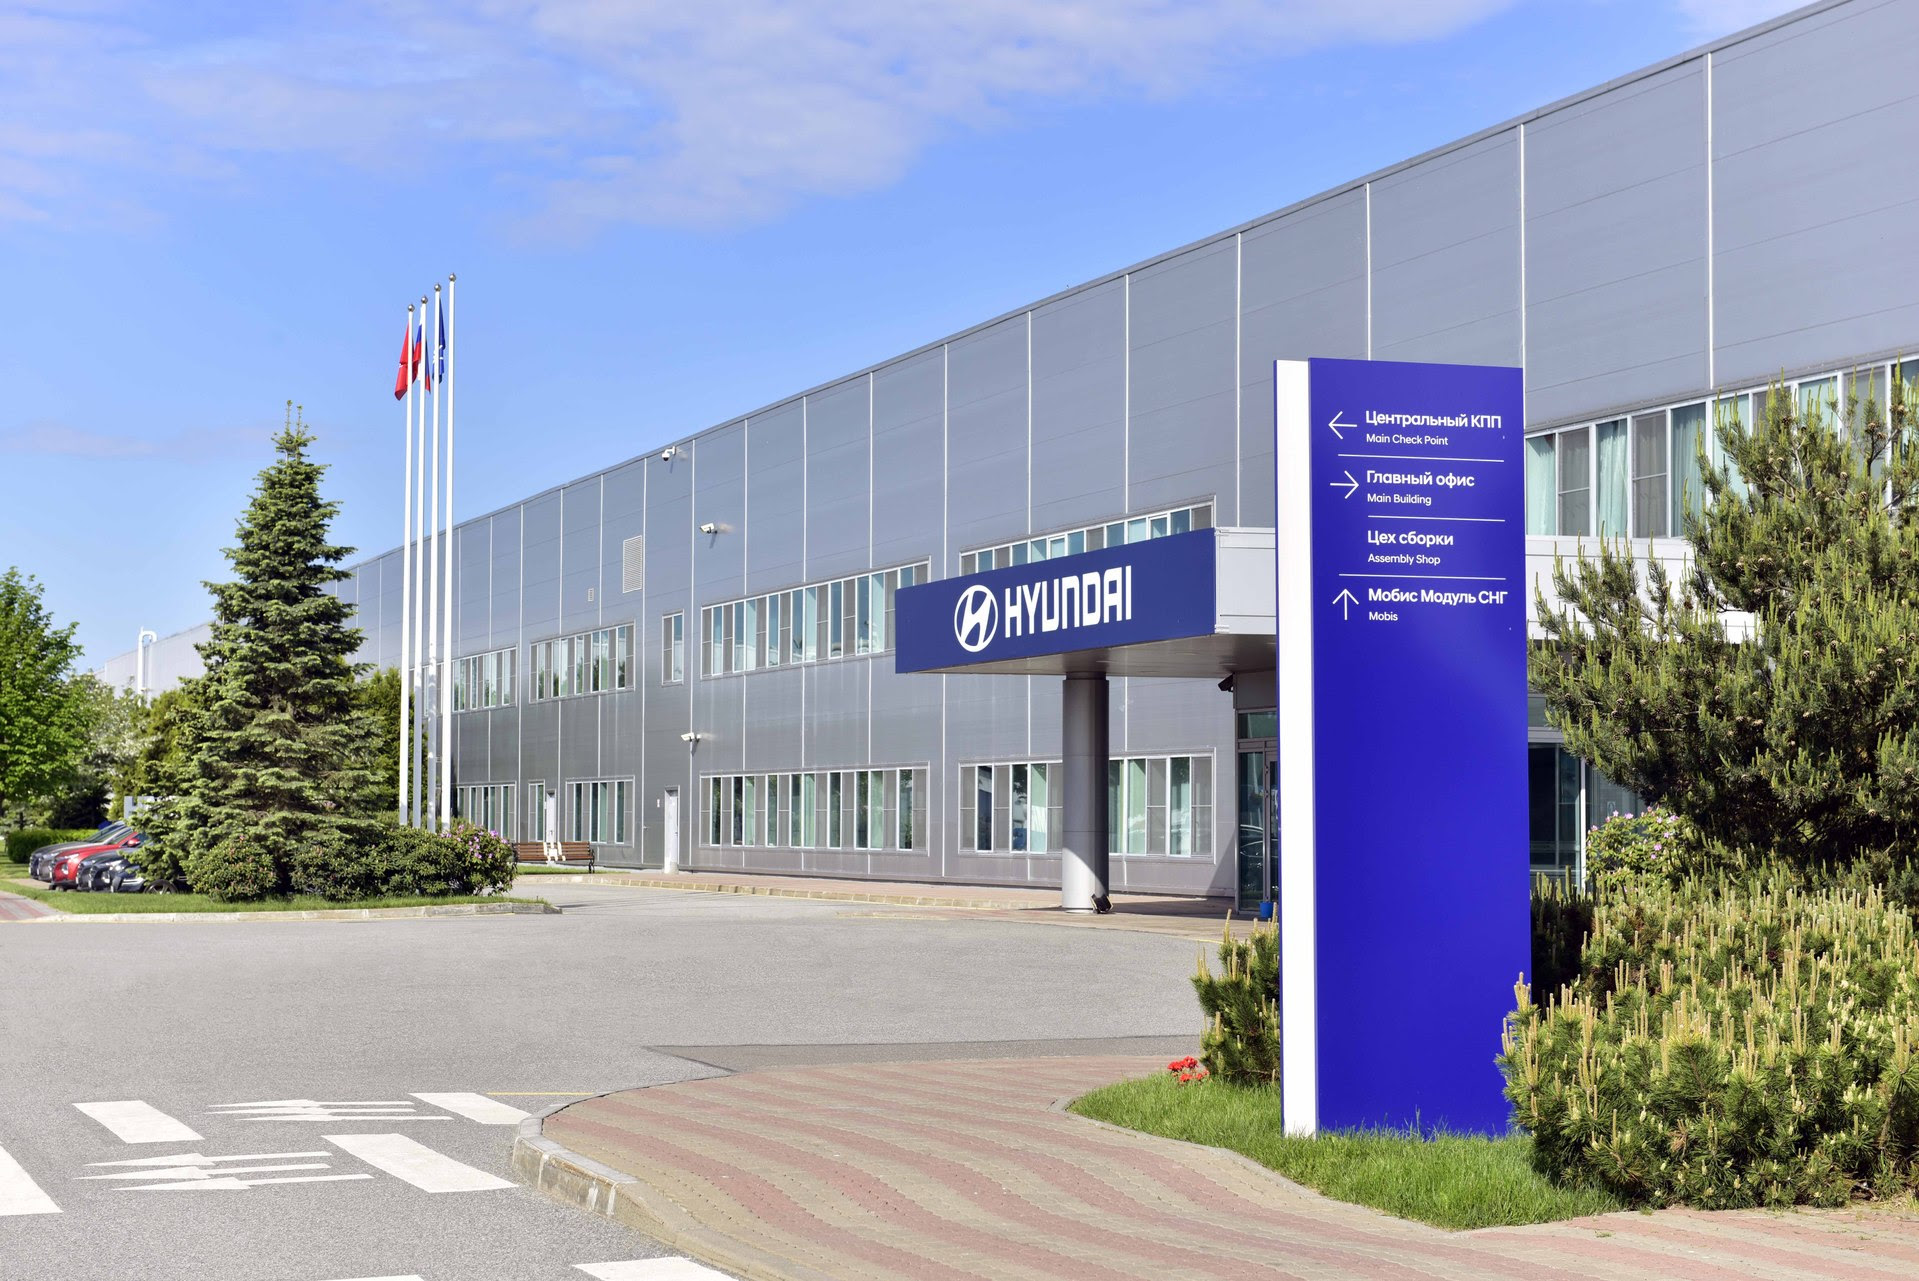 В первом полугодии завод Hyundai увеличил объемы производства, подготовился к запуску нового поколения Creta и начал экспорт компонентов